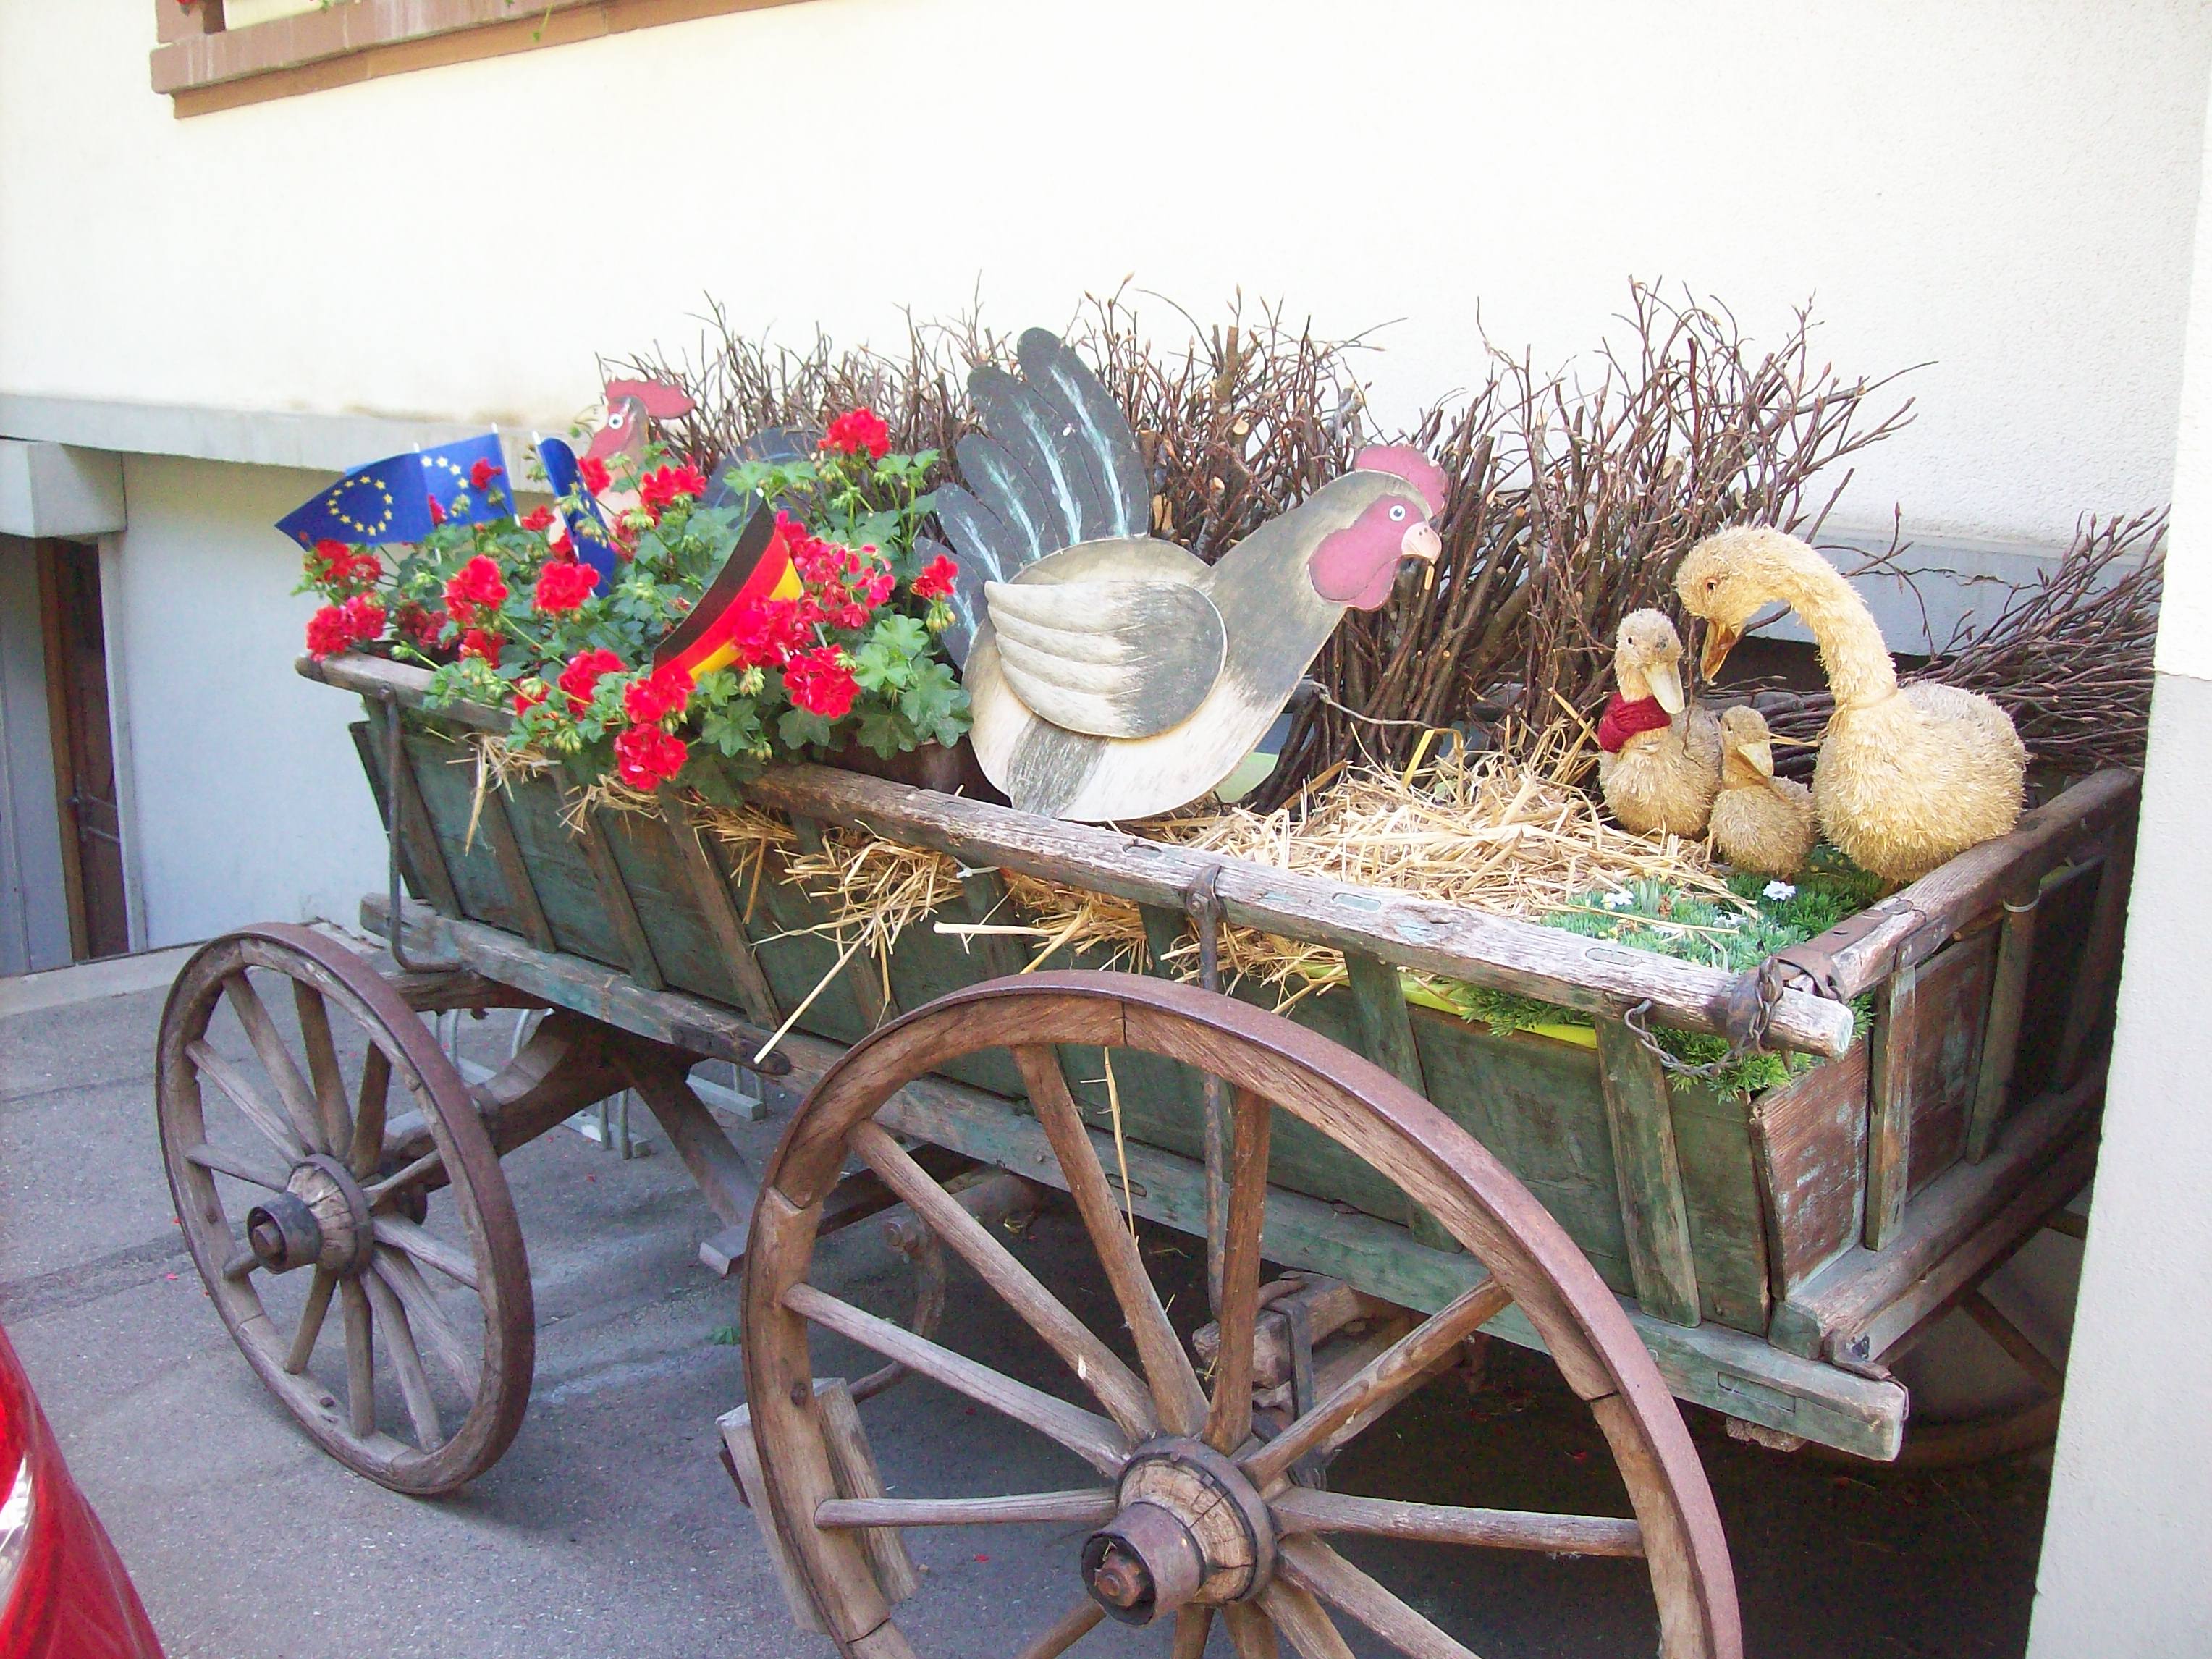 Ein alter Bauernwagen verziert den Eingangsbereich